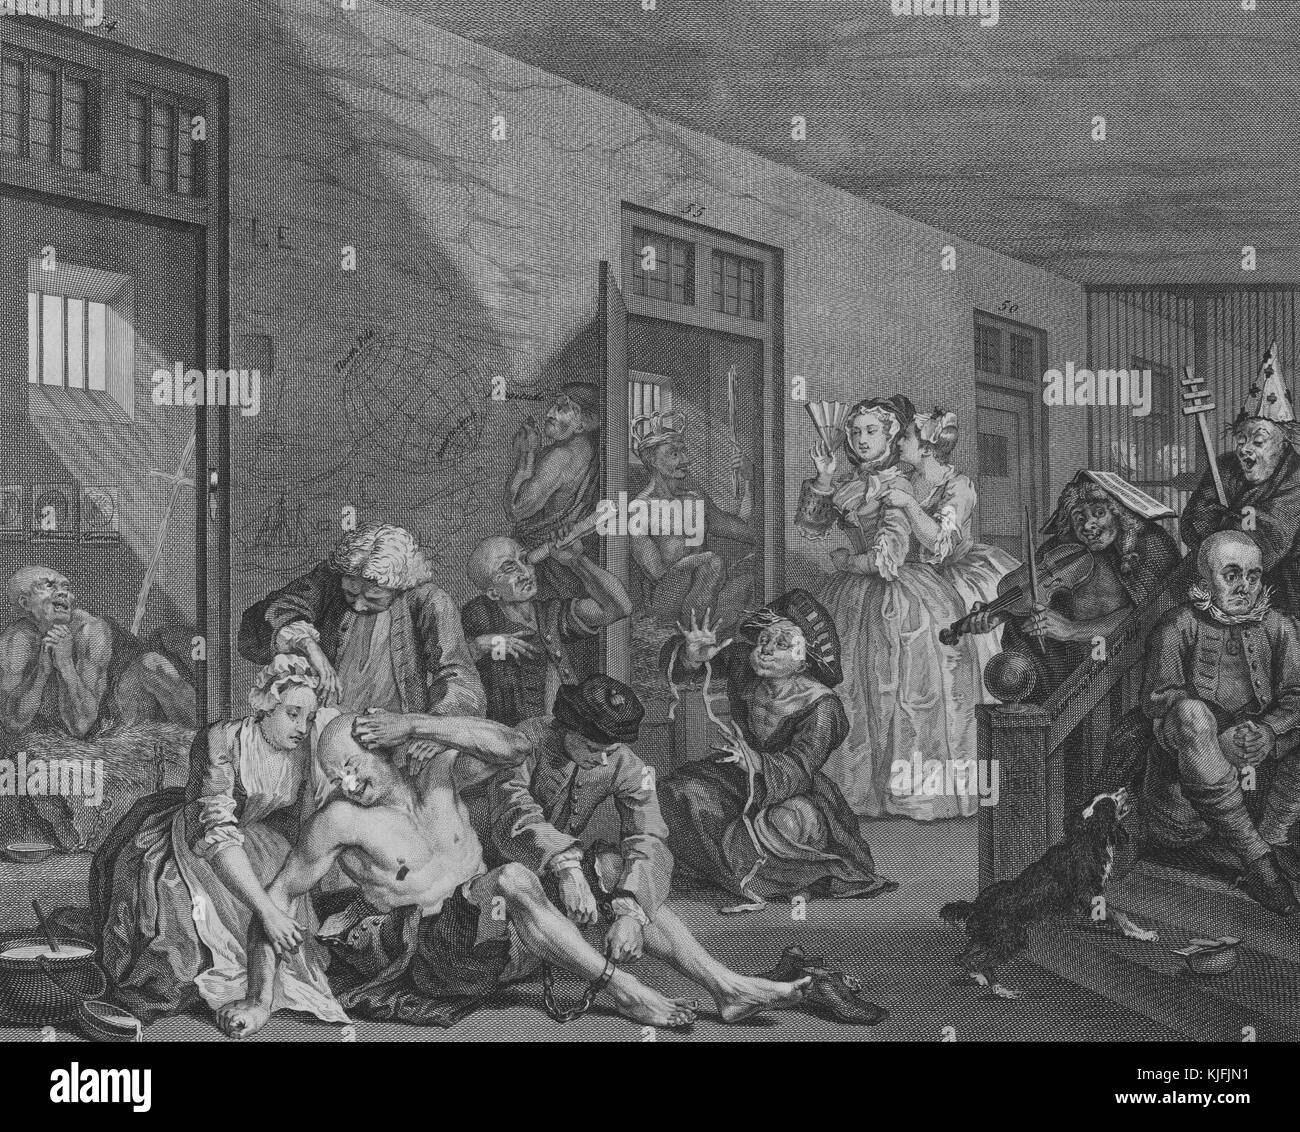 La gravure sur papier, intitulée 'un Rake's Progress, planche 8, tom rakewell se retrouve à l'hôpital de Bethléem de fous', représentant un groupe de personnes dans un établissement psychiatrique, certains offrant confort, deux femmes à l'arrière-plan, par William Hogarth, 1735. à partir de la bibliothèque publique de new york. Banque D'Images